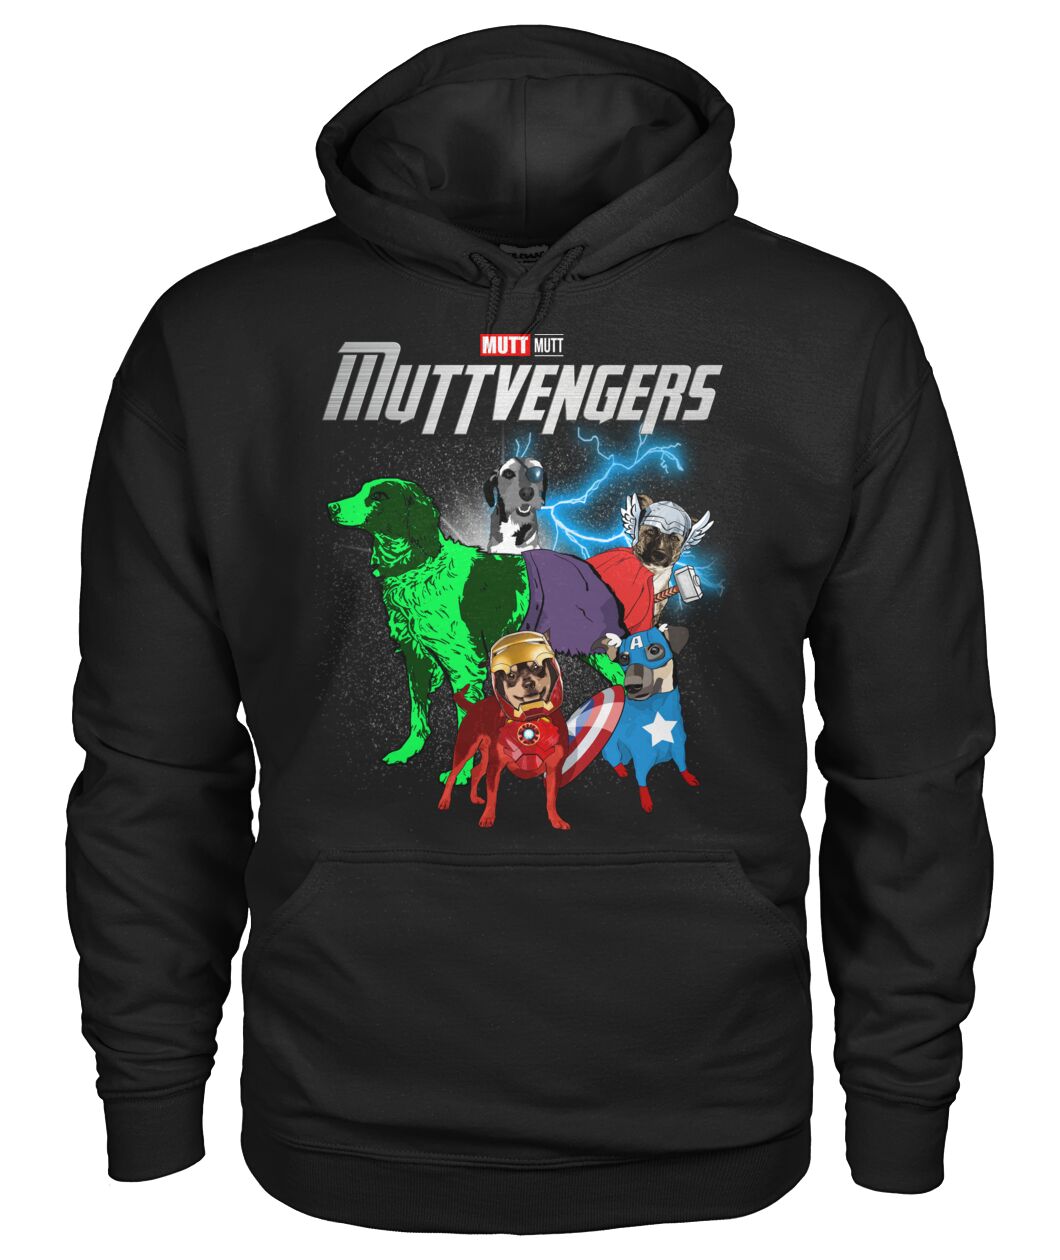 Muttvengers 3D Hoodie, Shirt 8